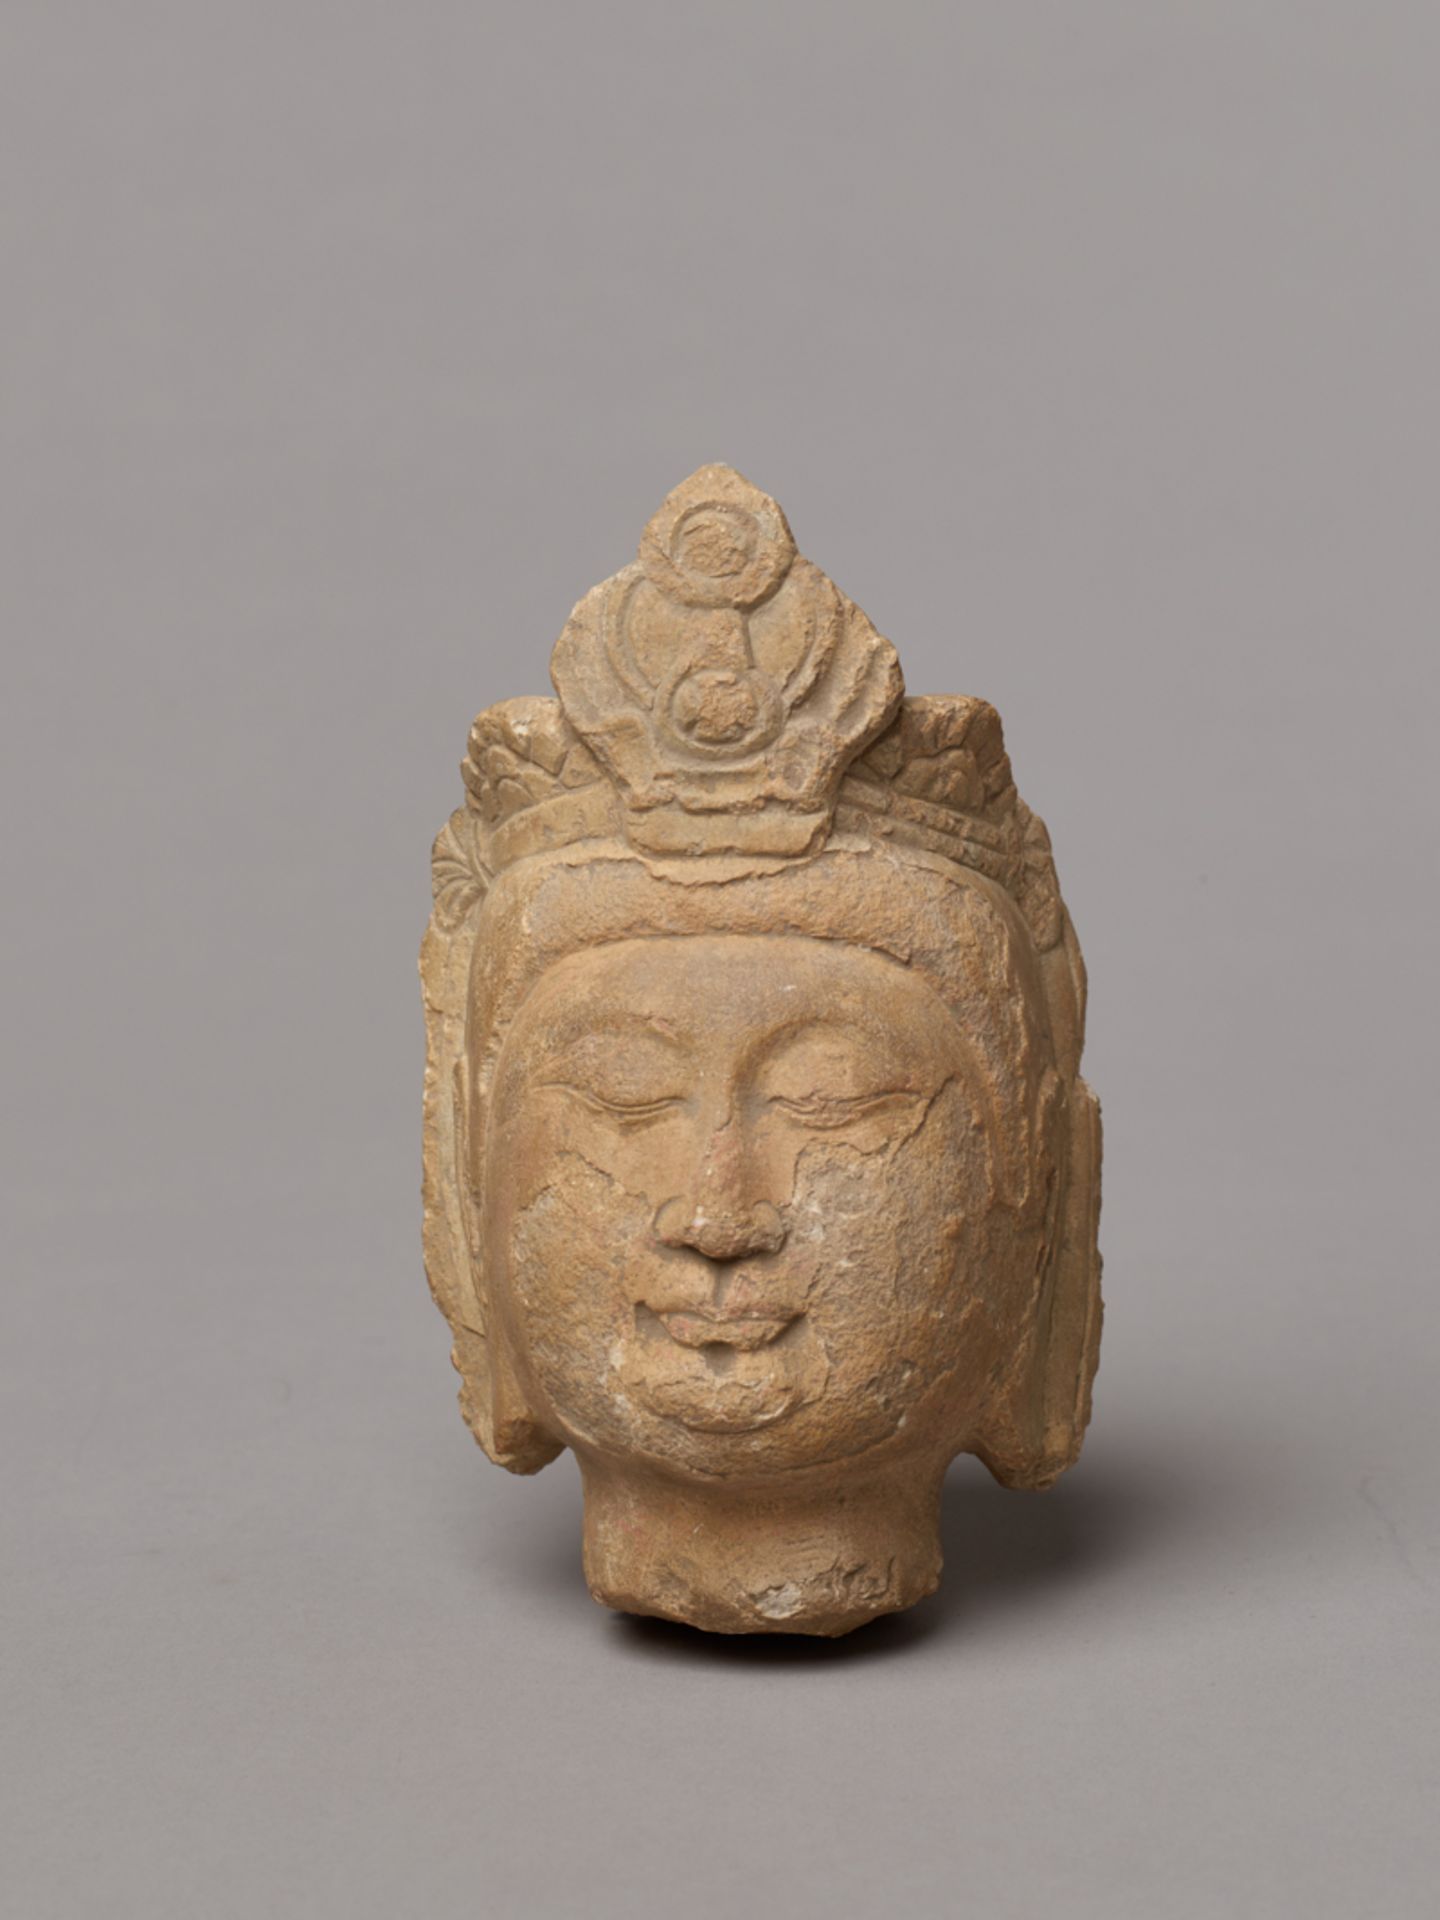 KOPF EINES BODHISATTVAGelbgrauer Stein. China, Nördliche Wei-Dynastie (386 - 534)Trotz der Alterung - Bild 2 aus 6